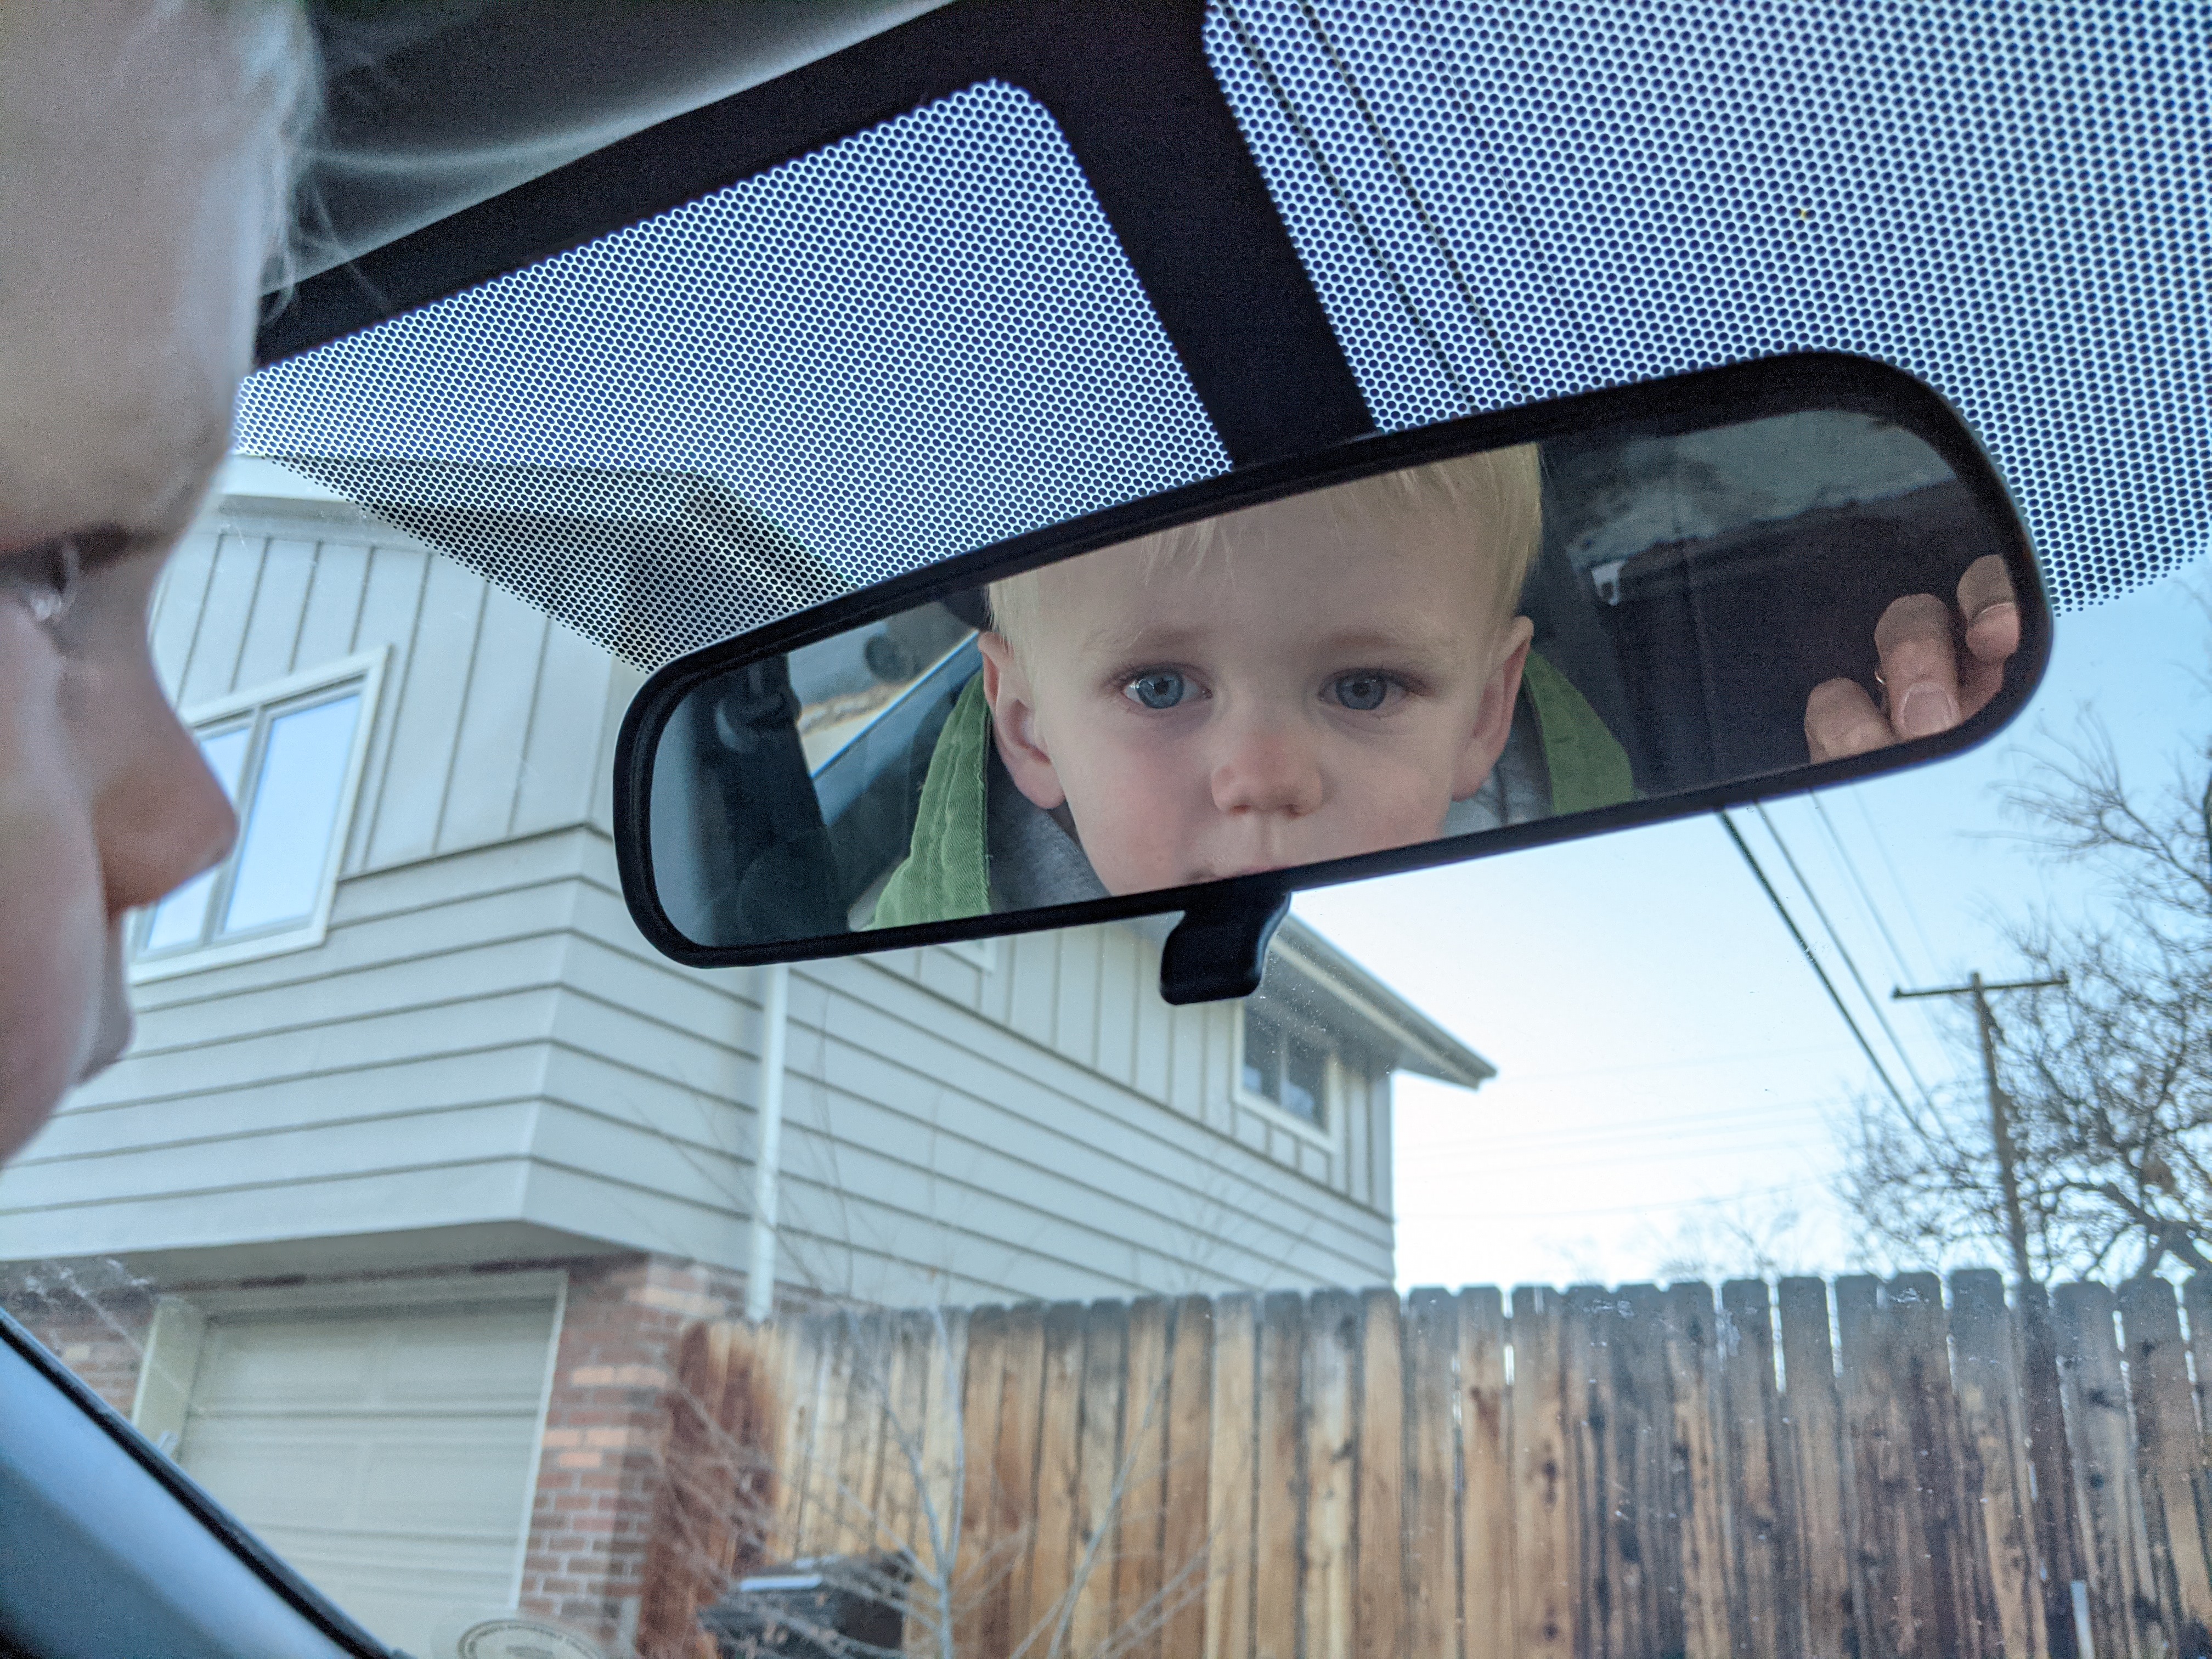 Owen in the rearview mirror.